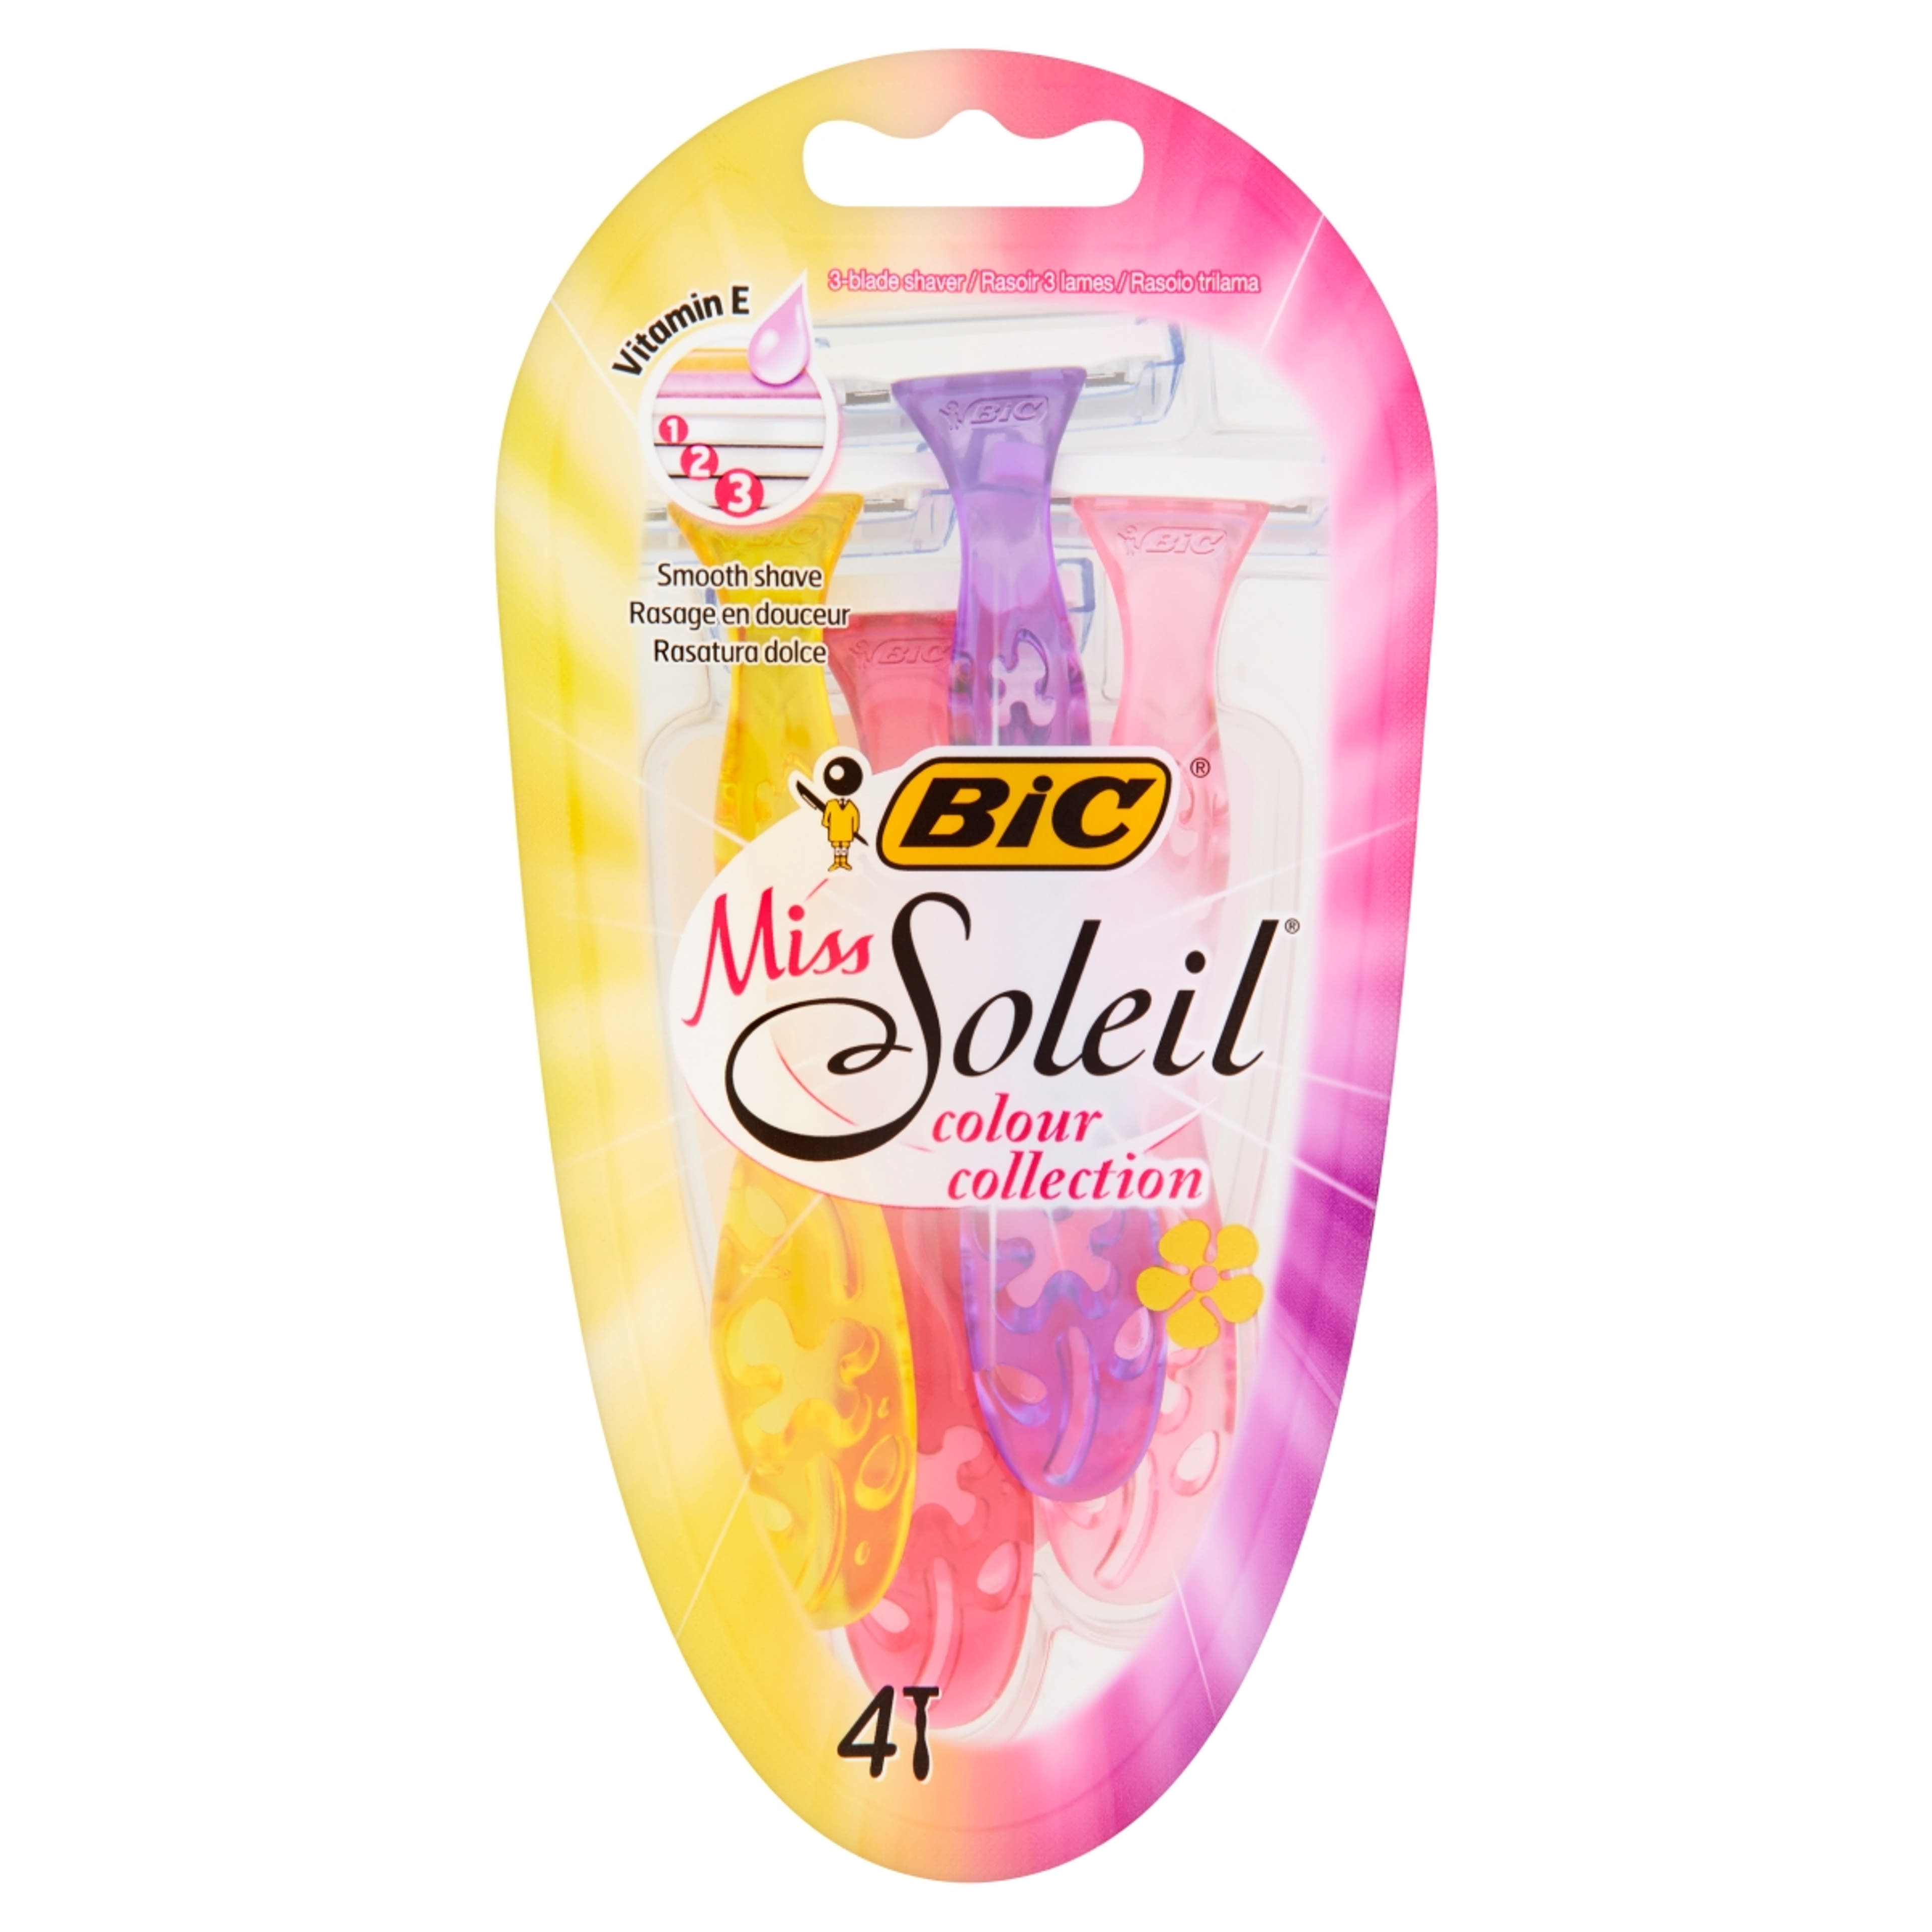 Bic Miss Soleil Color női eldobható borotva 3 pengés 3+1 - 4 db